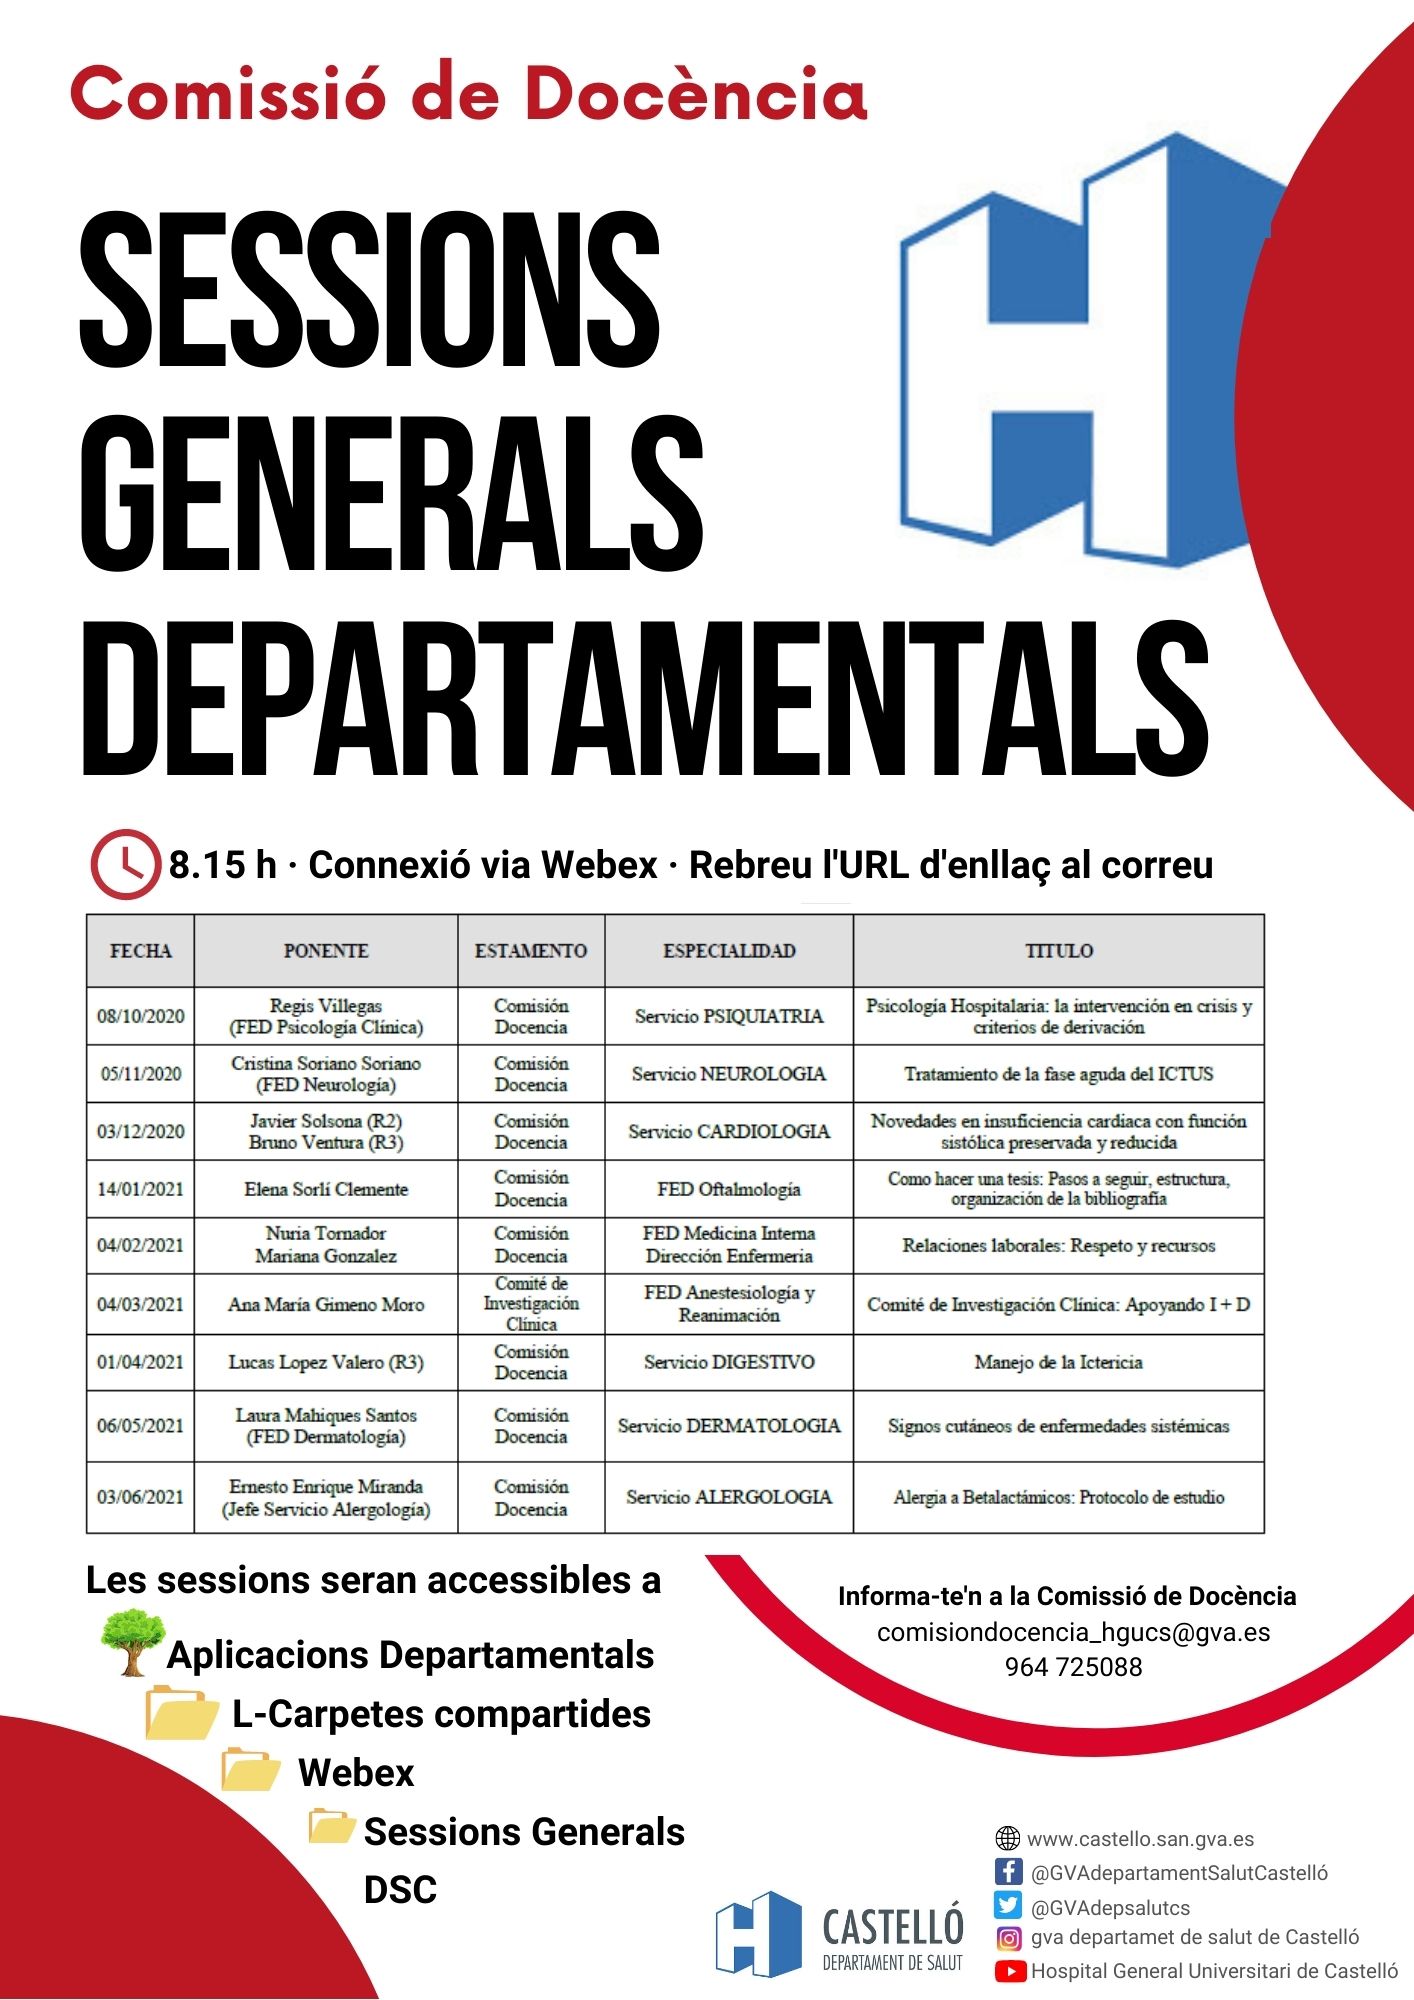 cartel de la comision de docencia con las sesiones generales departamentales